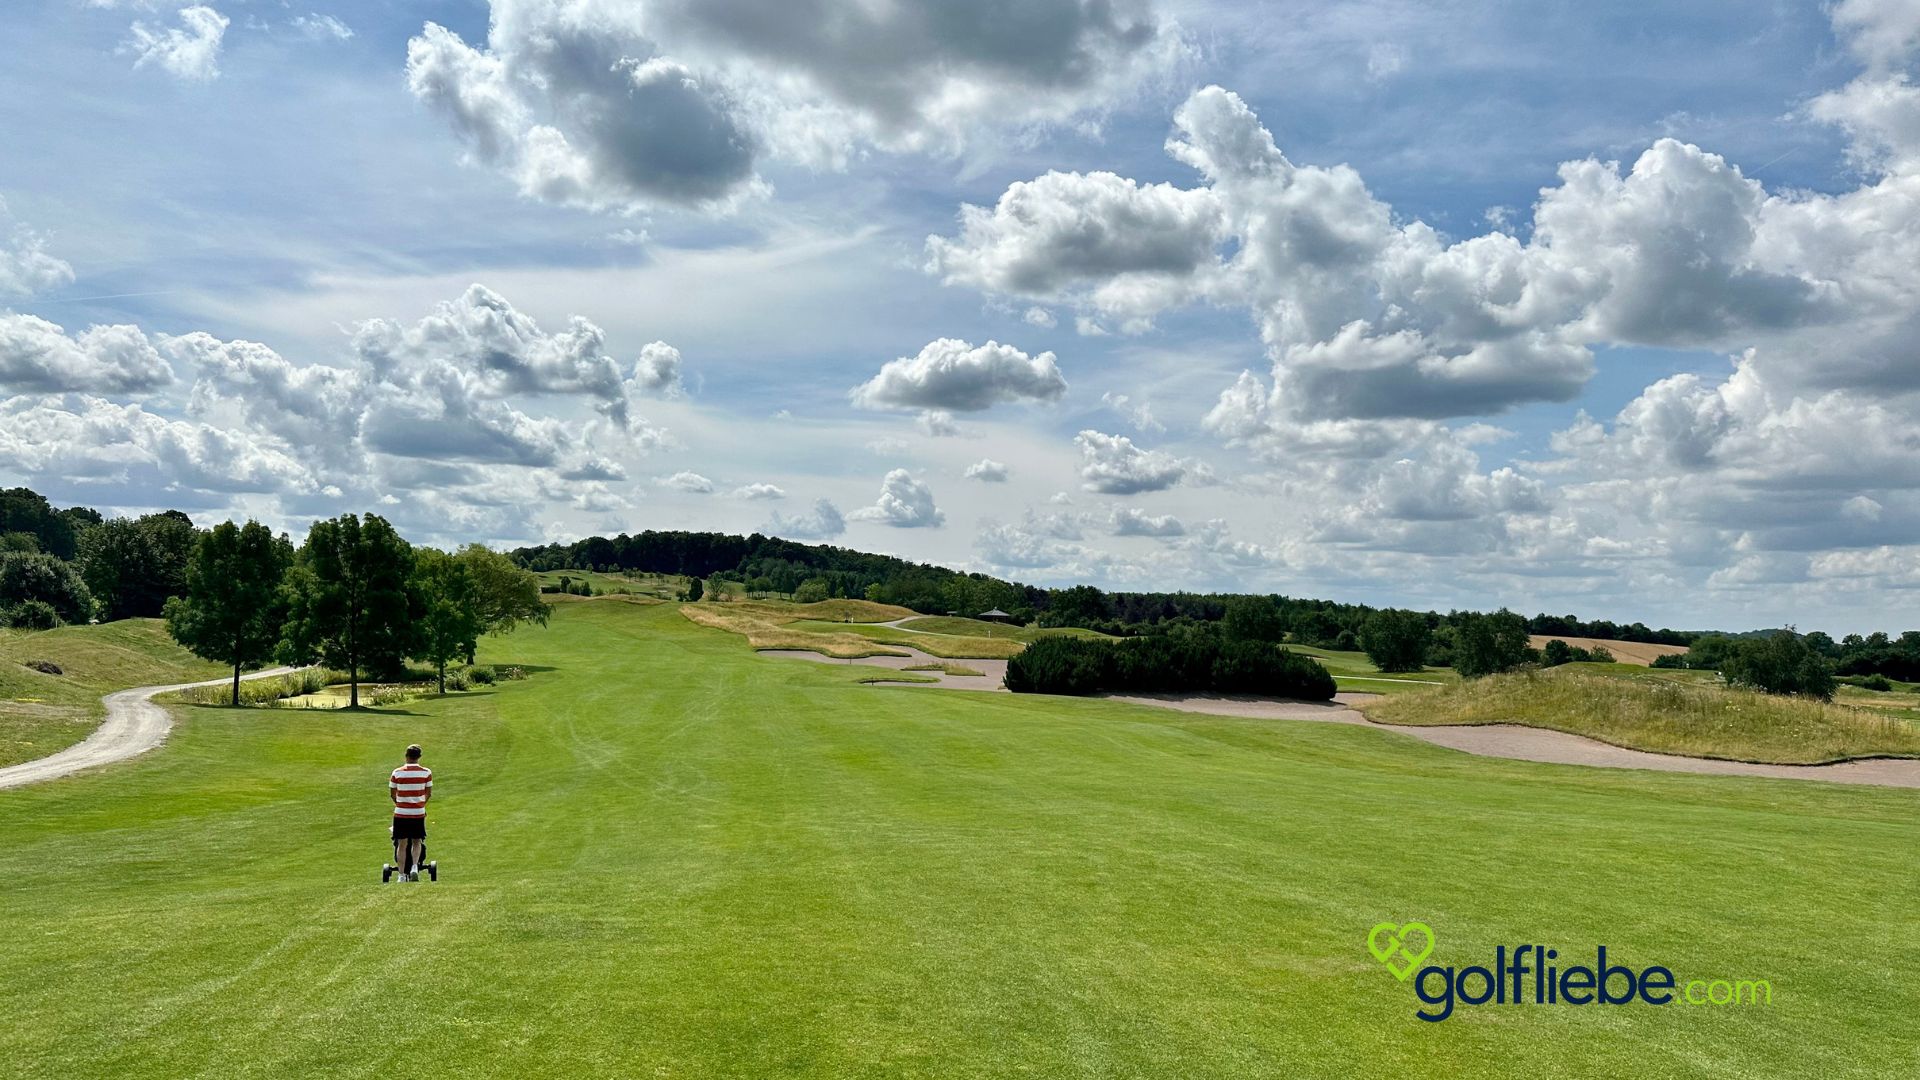 Sehr gepflegte Fairways Spielfreude beim Golf Zu Besuch im GC Hardenberg, Golfresort Hardenberg Golfliebe.com